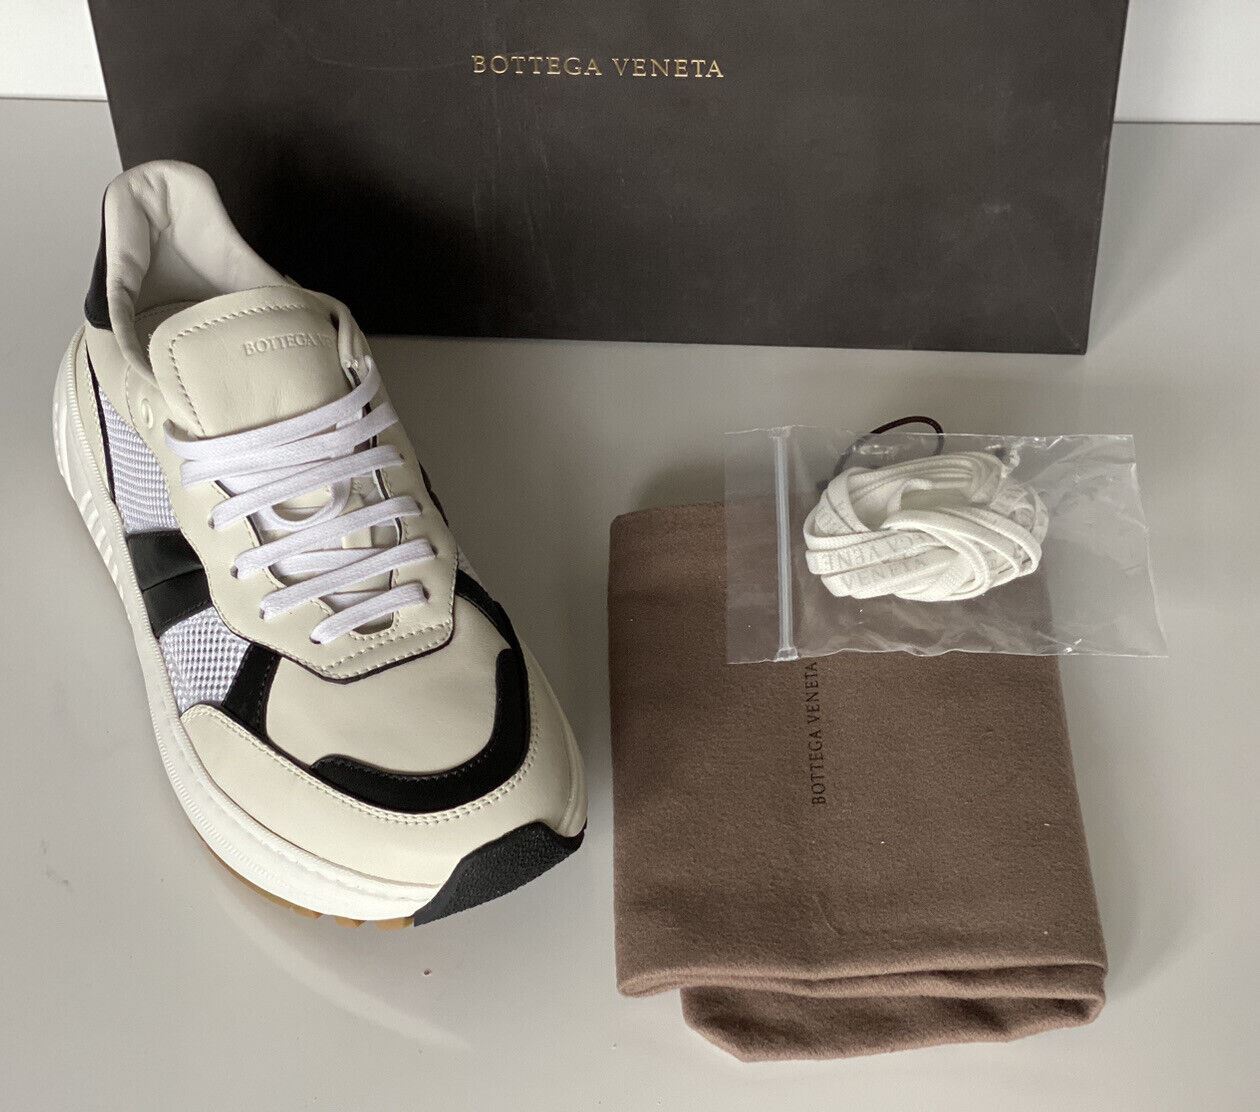 NIB $790 Bottega Veneta Men's Leather & Mesh Sneakers White/Black 9.5 US 565646